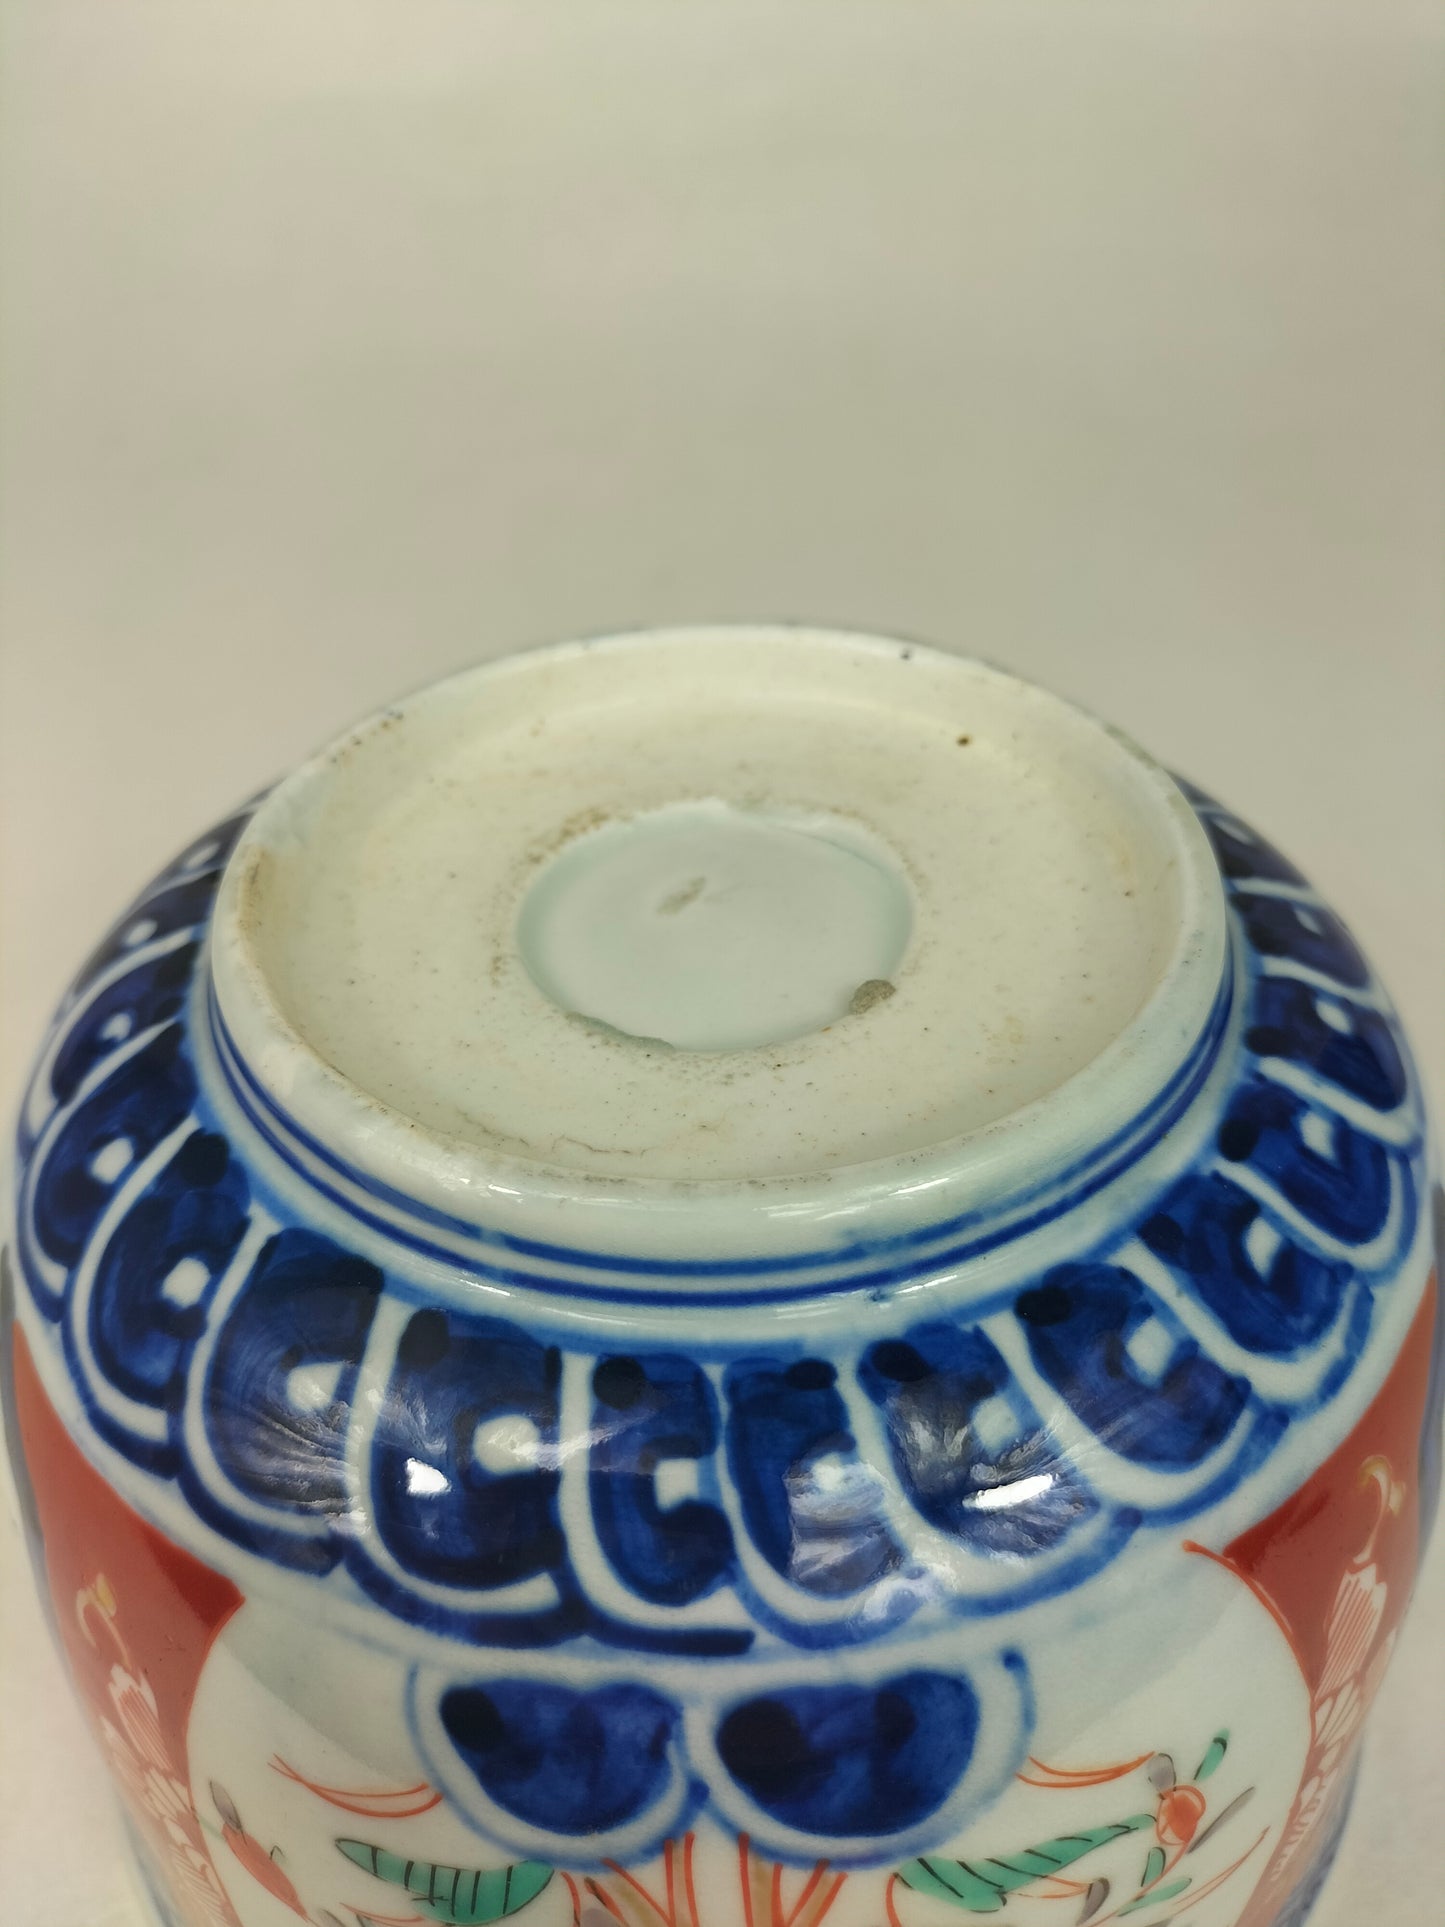 وعاء إيماري ياباني عتيق مزين بزخارف نباتية // فترة ميجي - القرن التاسع عشر